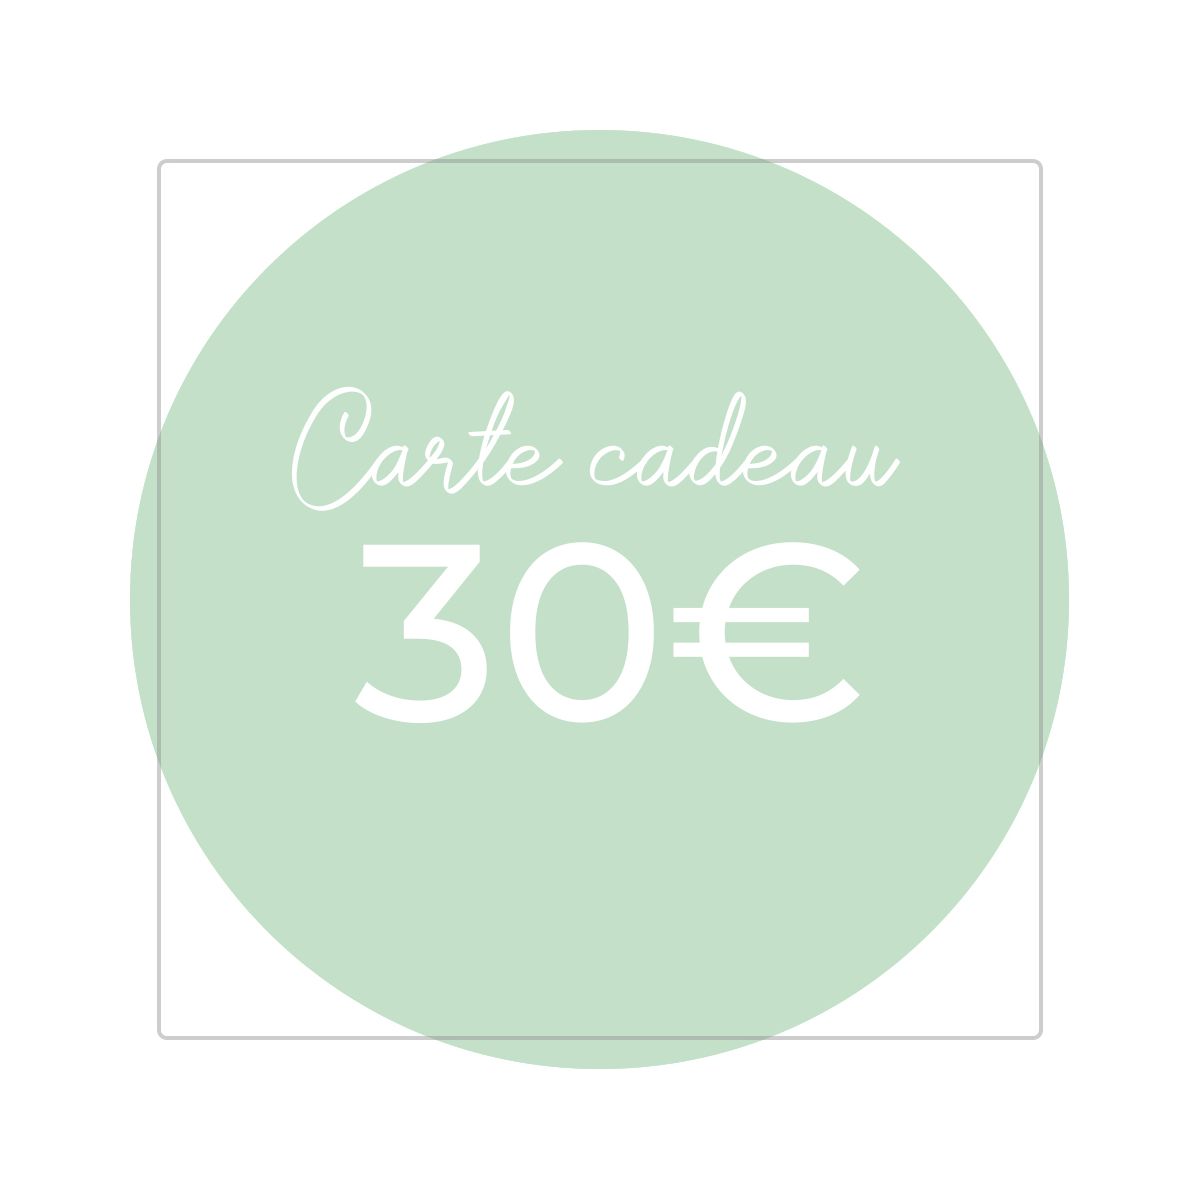 Carte cadeau 30€ - Version numérique